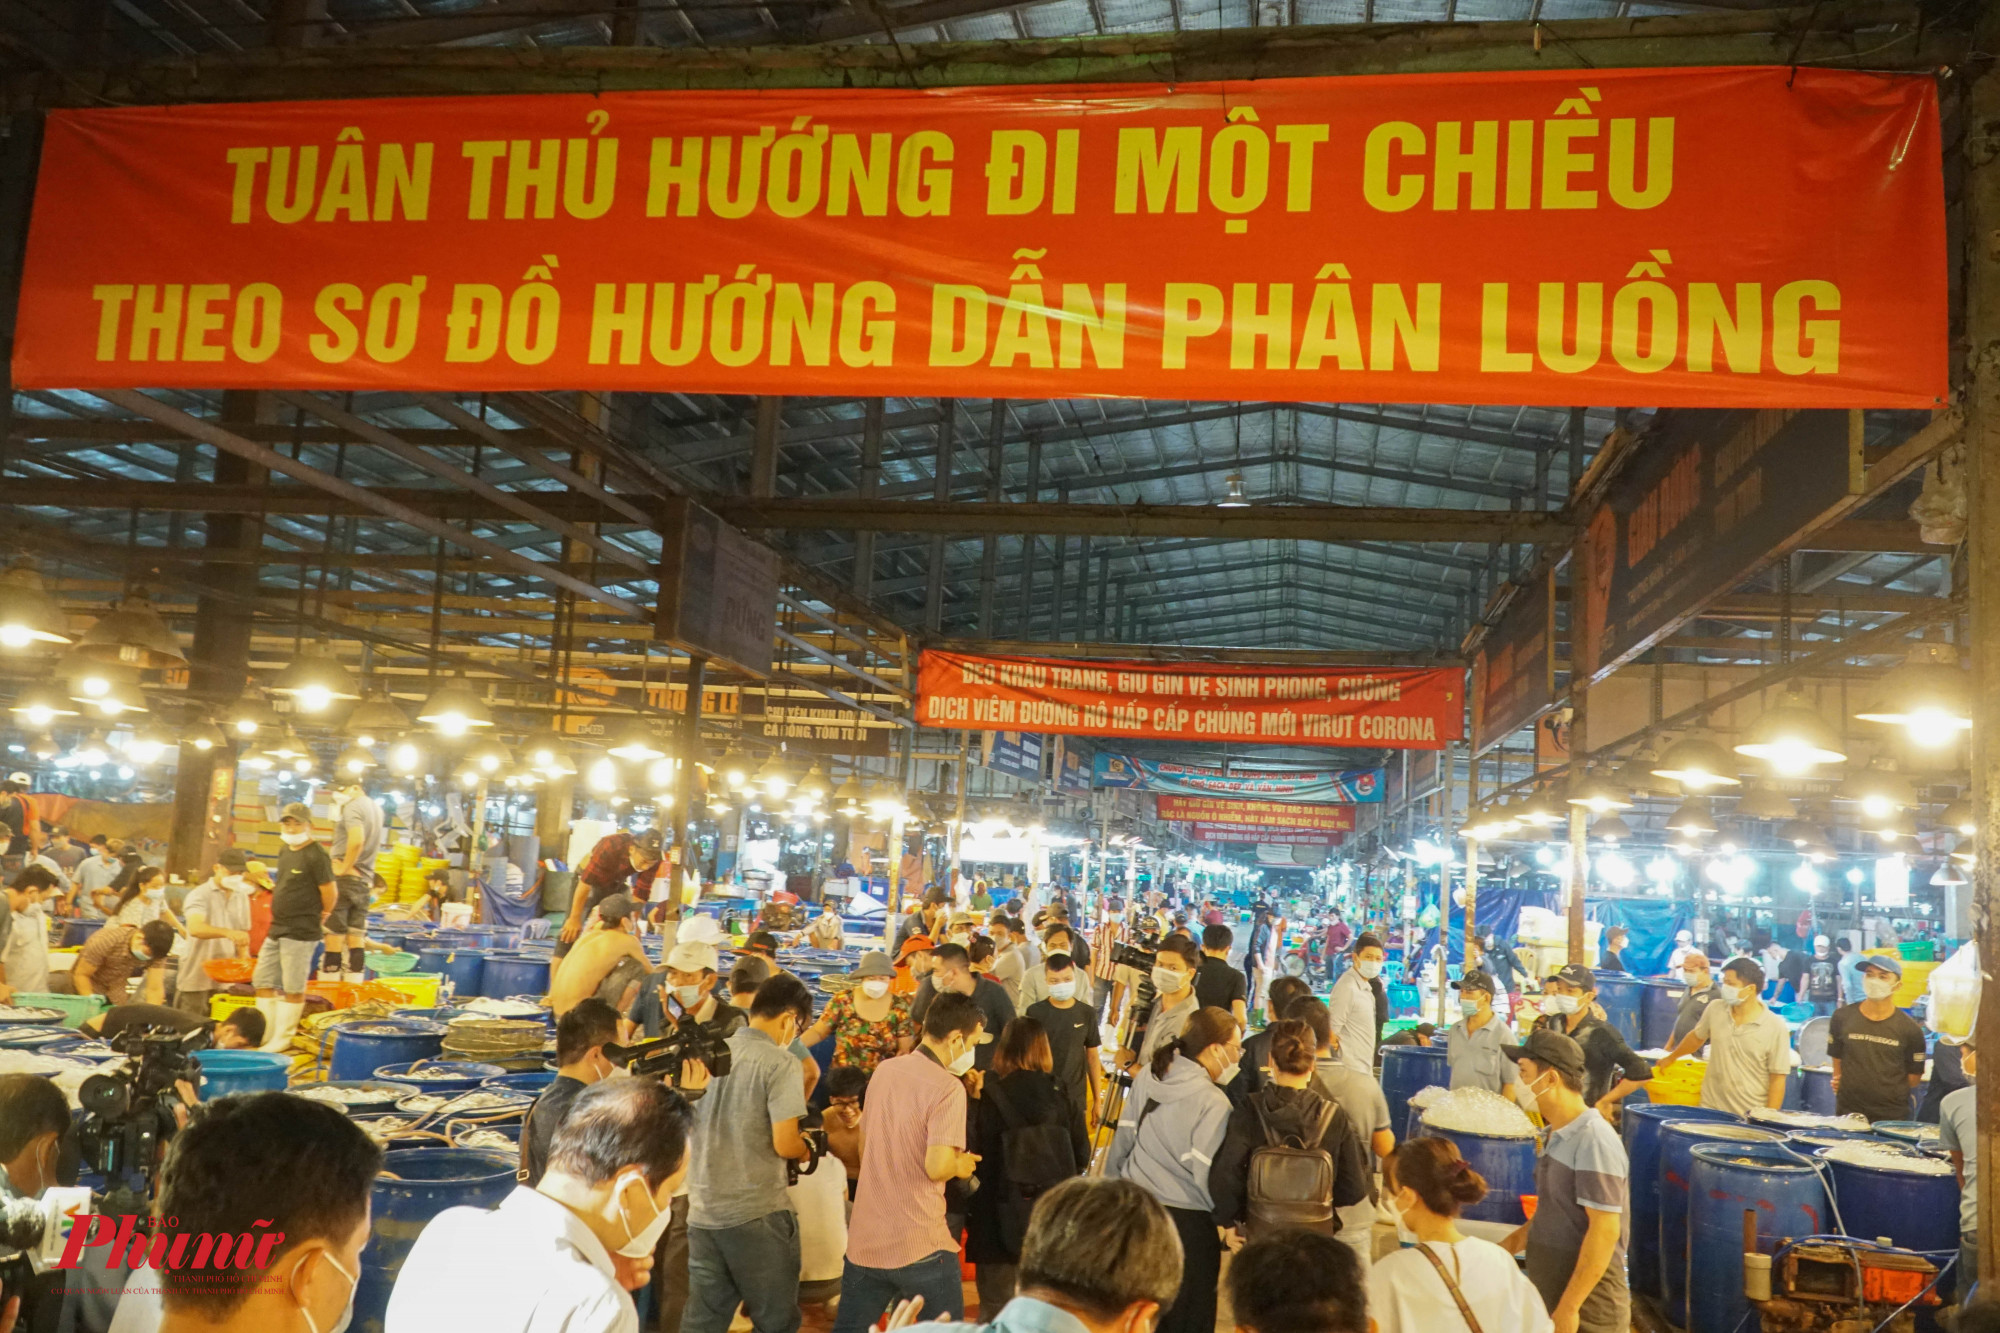 BQL chợ Bình Điền treo nhều băng rôn, khẩu hiệu nhắc nhở ý thức người dân